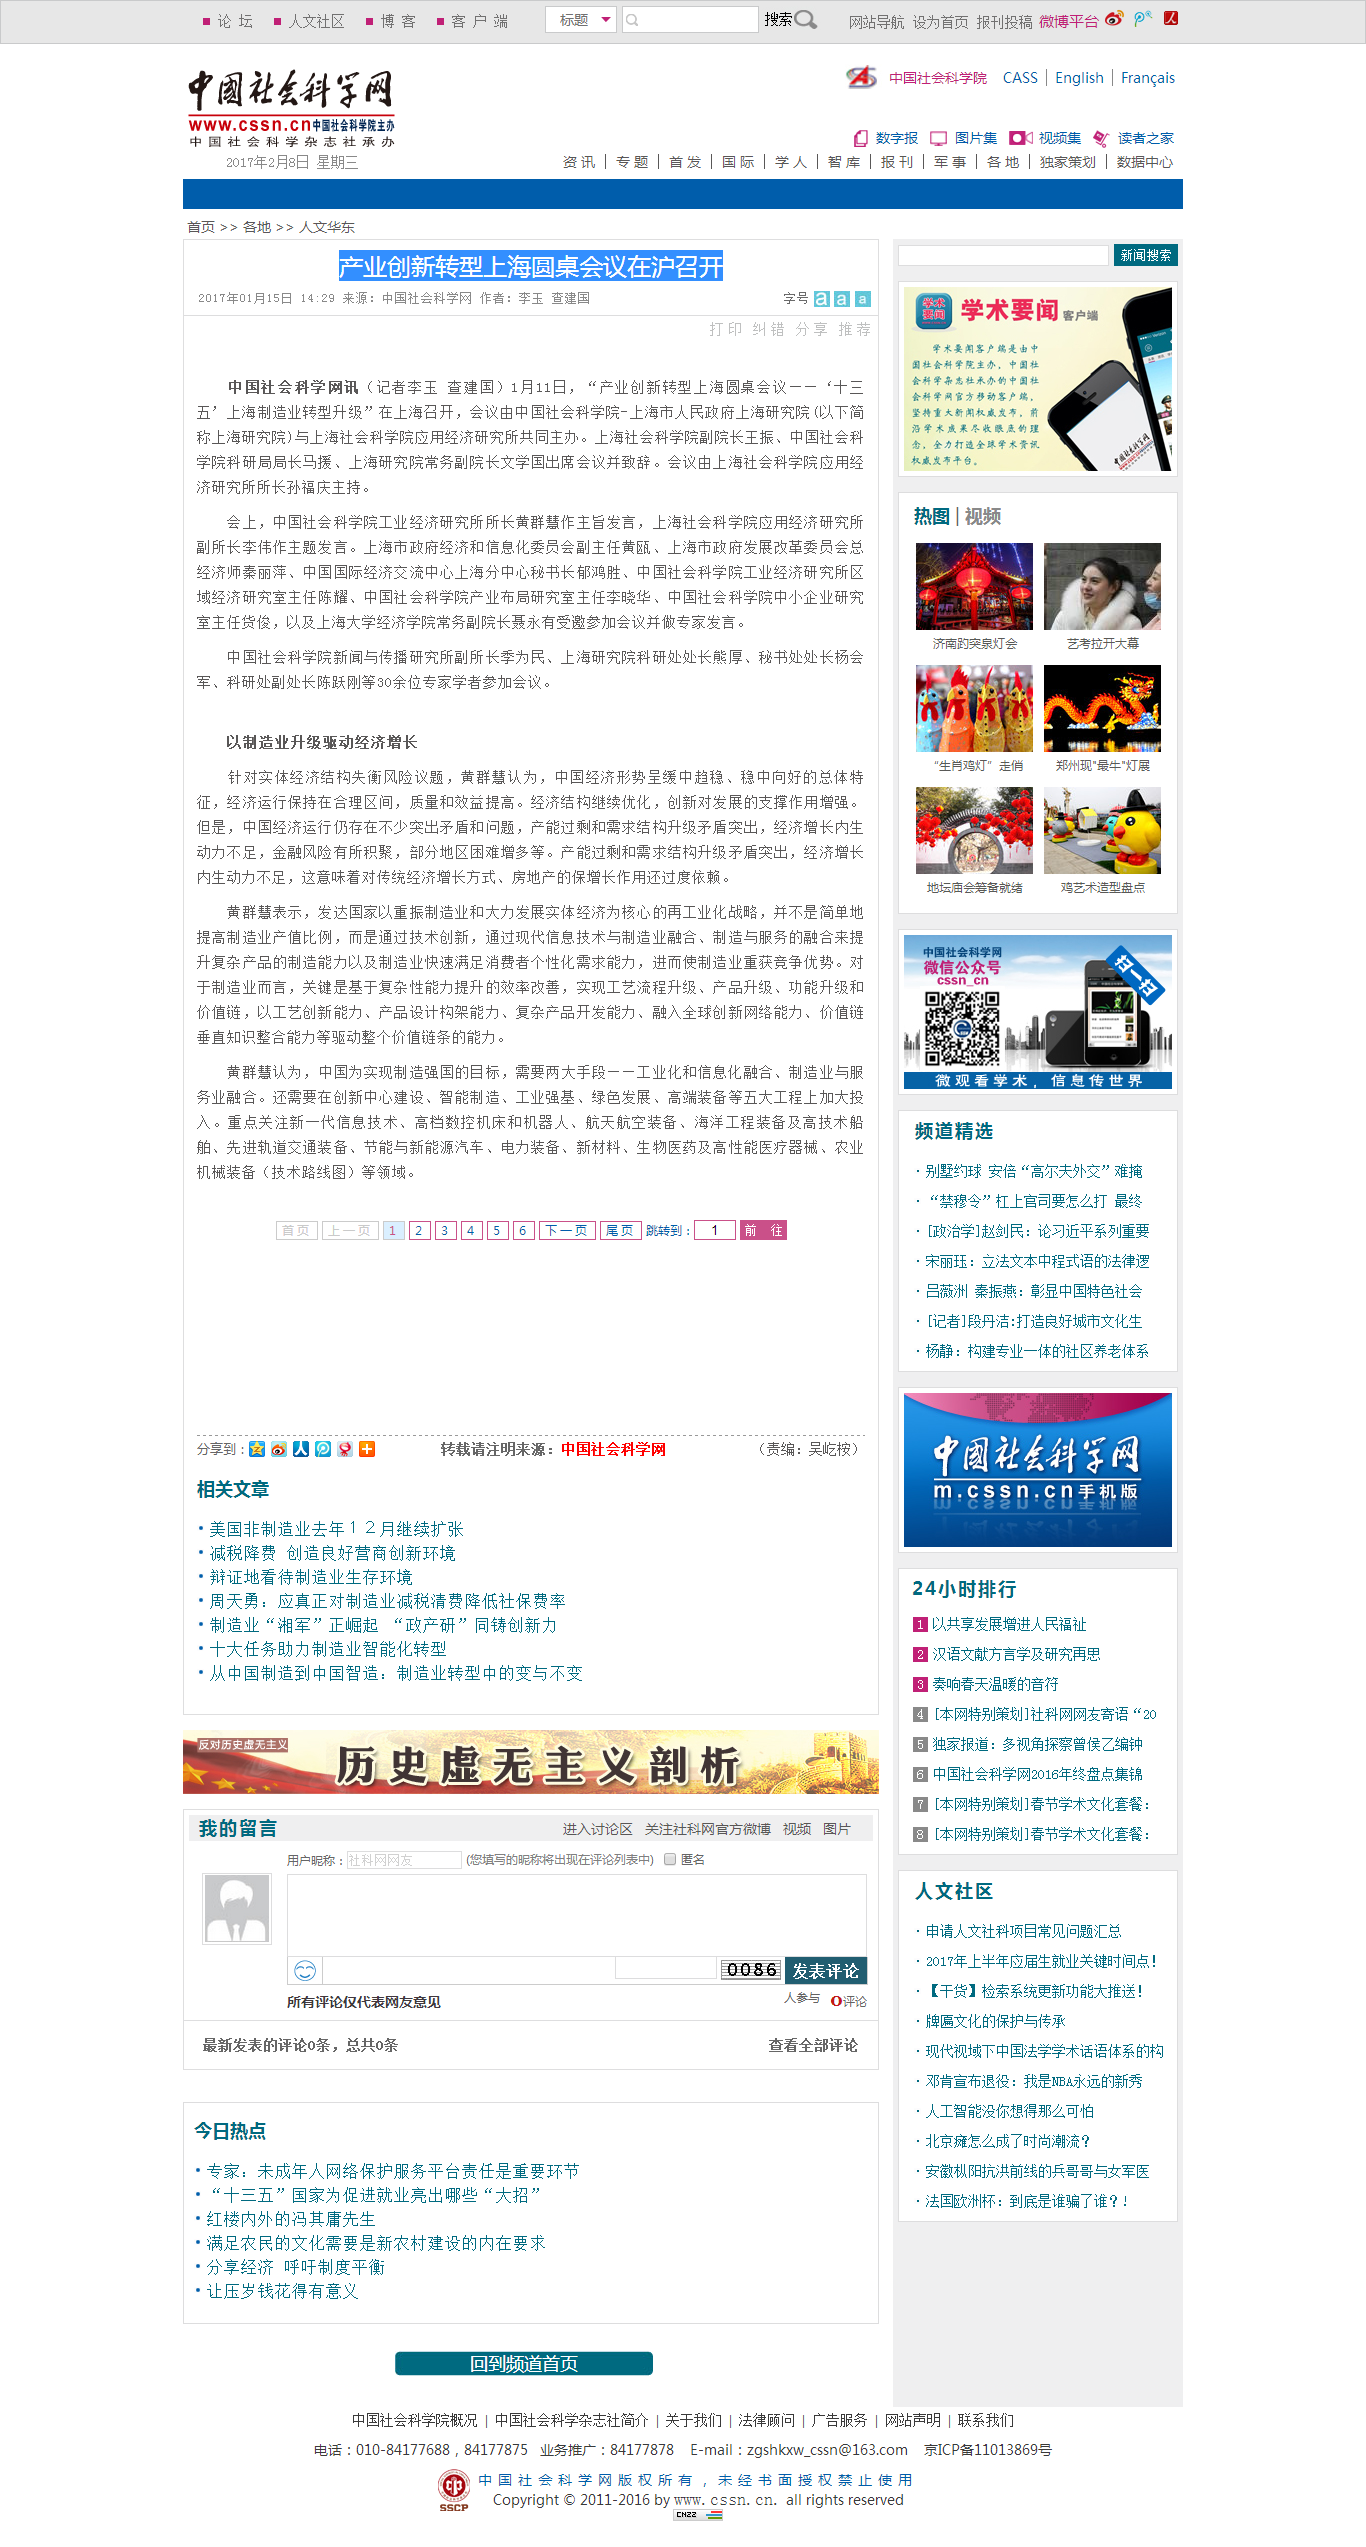 产业创新转型上海圆桌会议在沪召开-中国社会科学网.png